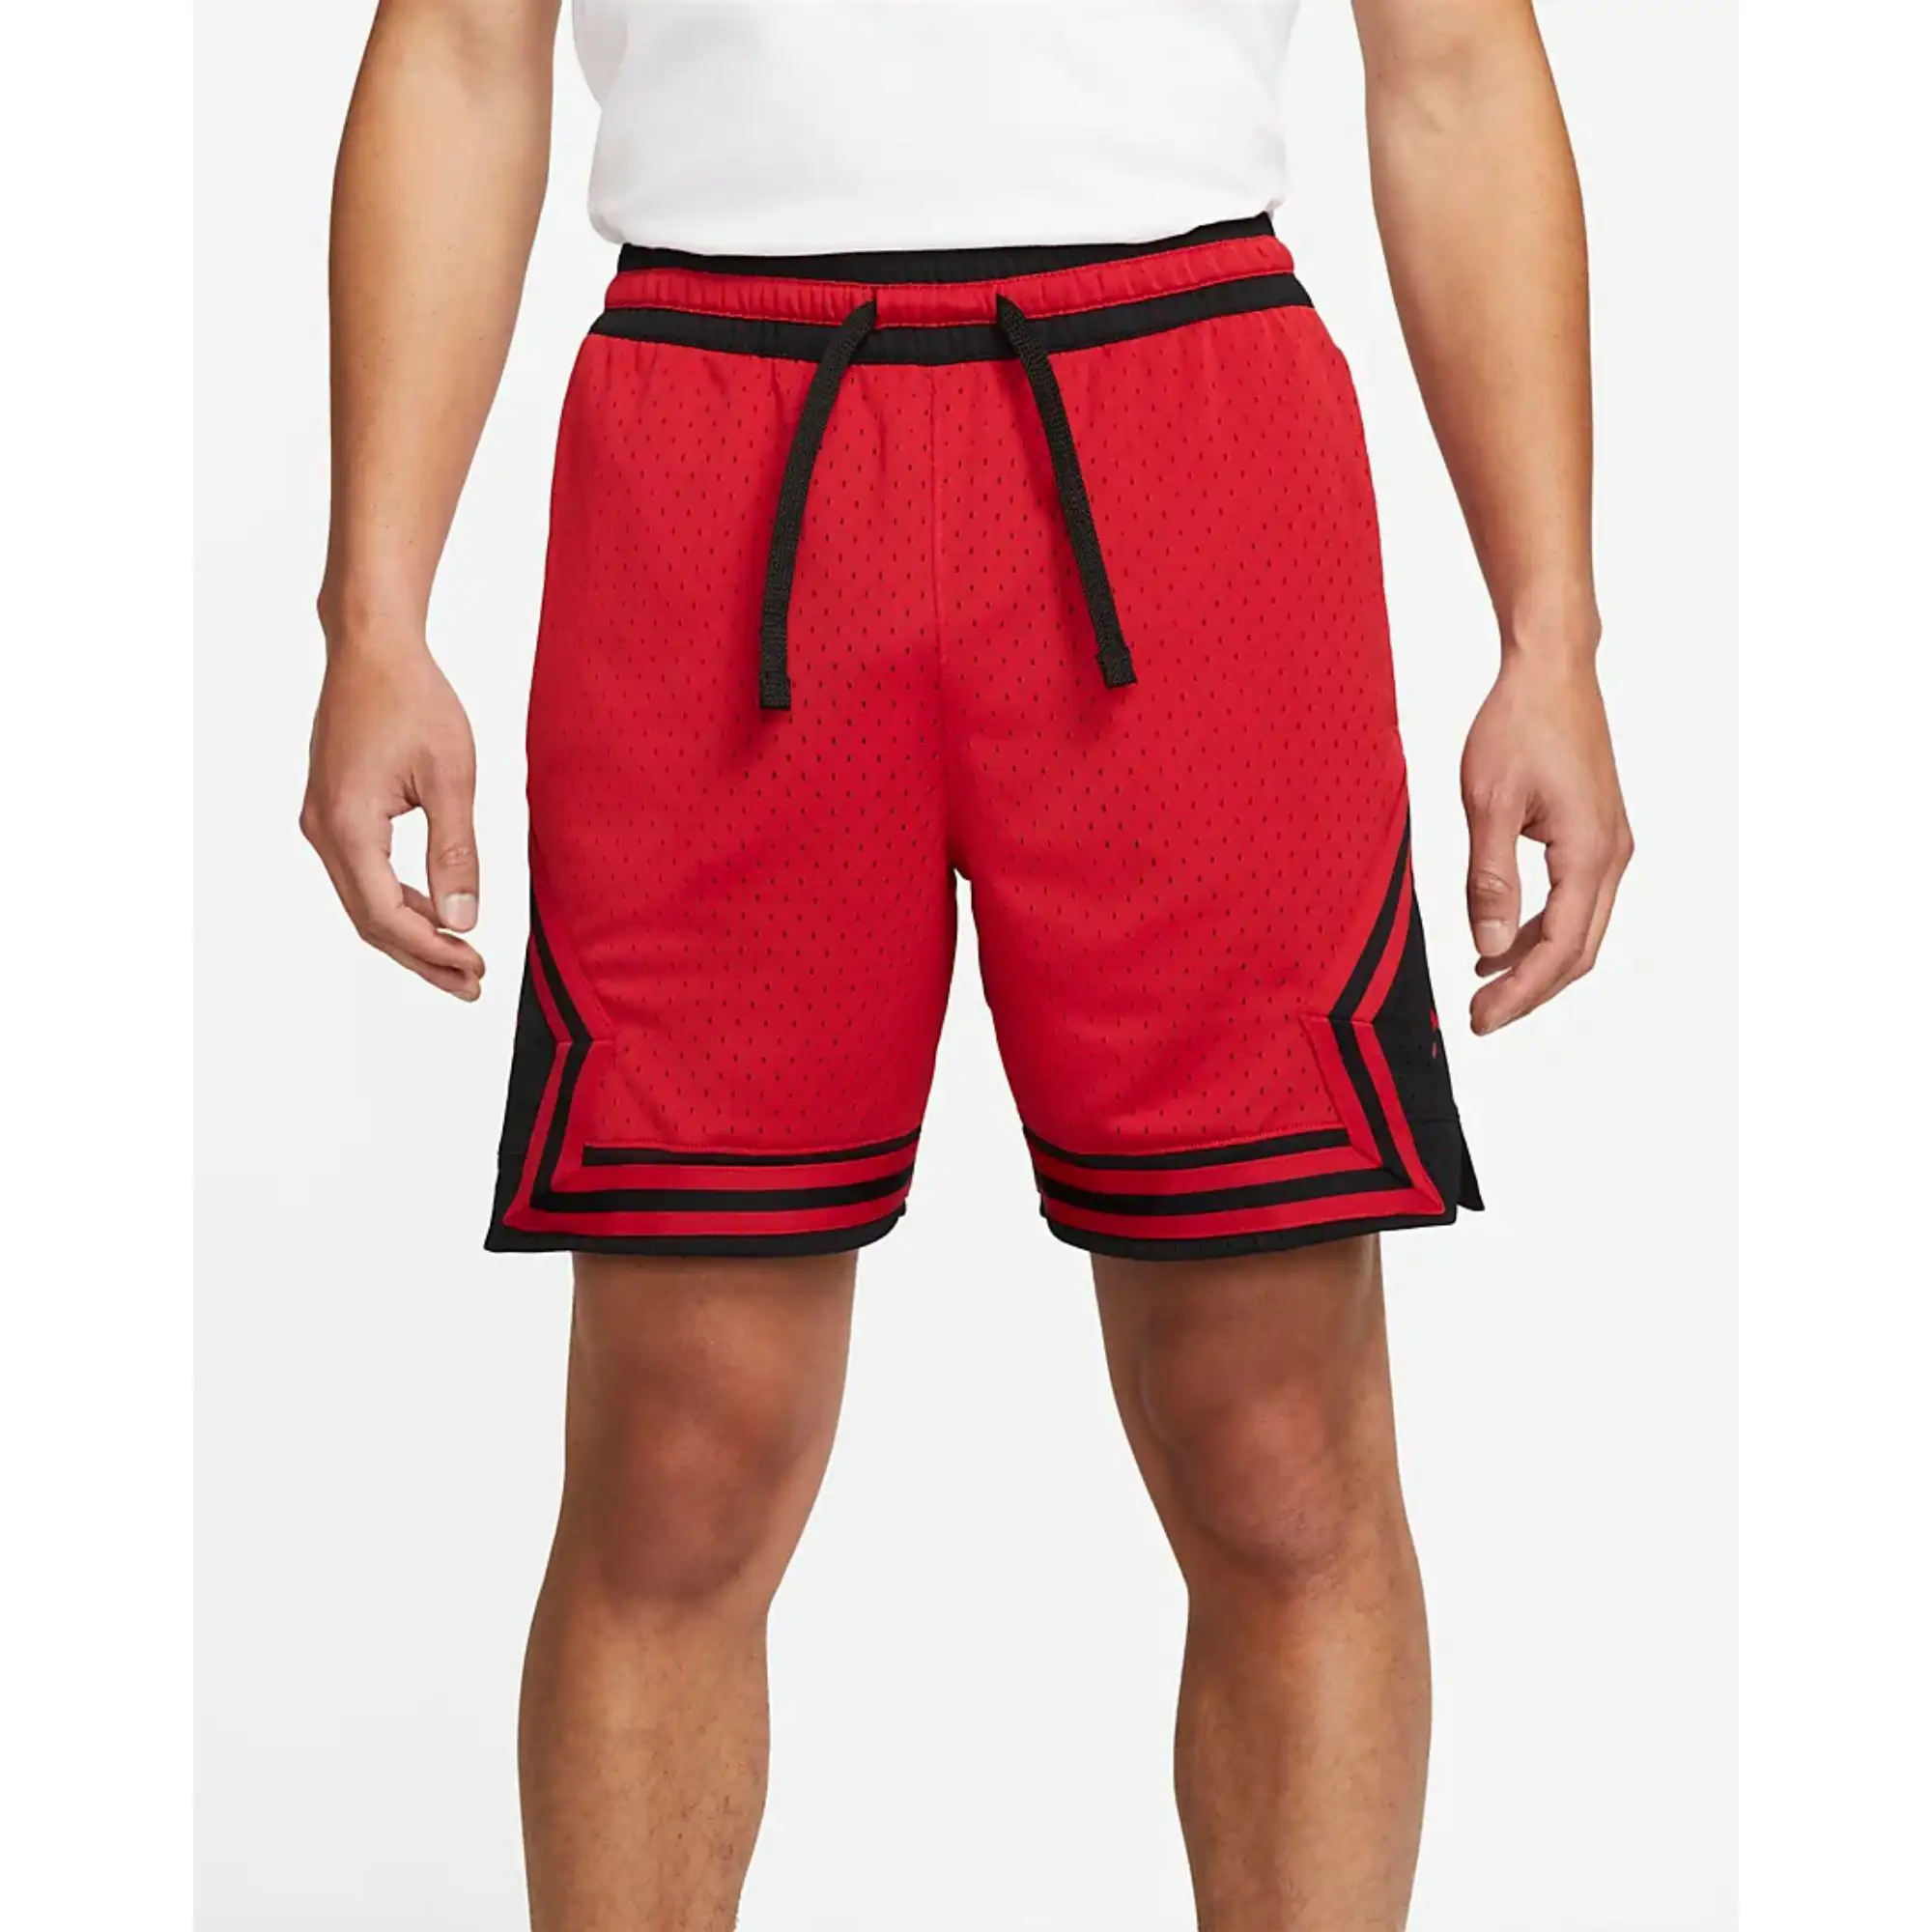 יבש ונוח 100% פוליאסטר רשת בהיר אדום & שחור Mens יהלומי מכנסיים עם חגורת פסים לסרוג קלטת